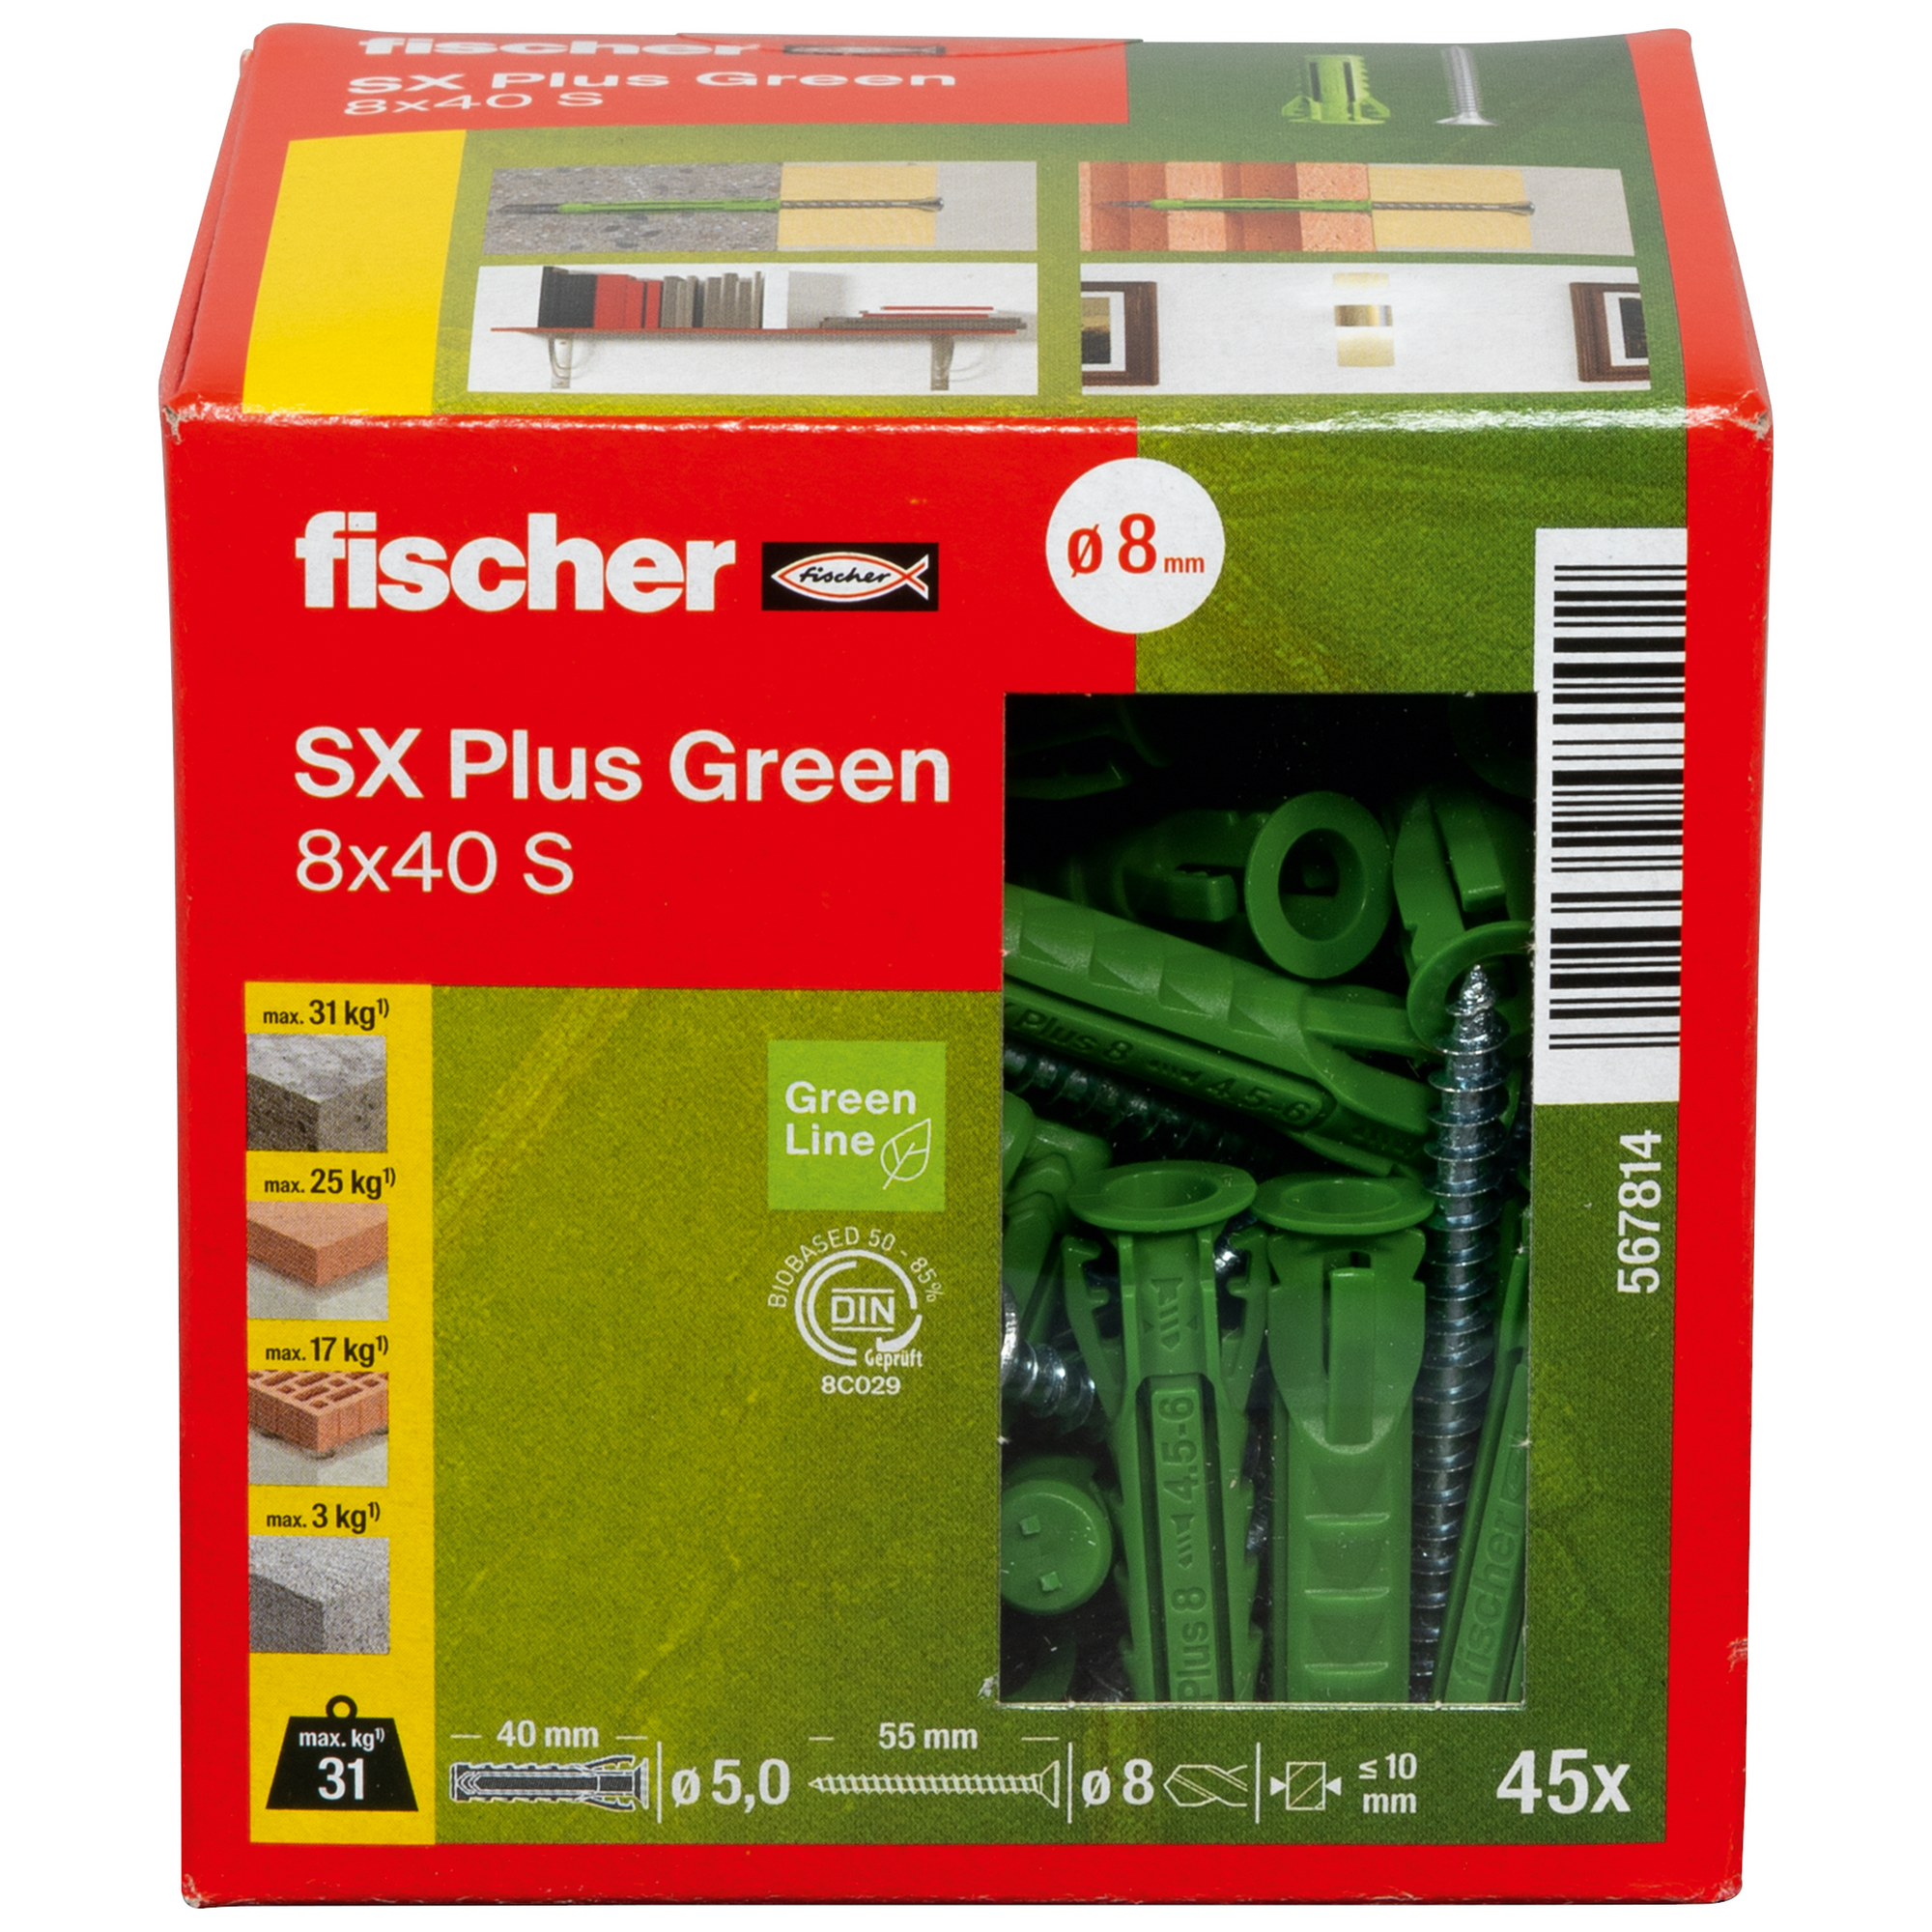 Spreizdübel-Set 'SX Plus Green' Ø 8 x 40 mm S mit Schraube, 90-teilig + product picture